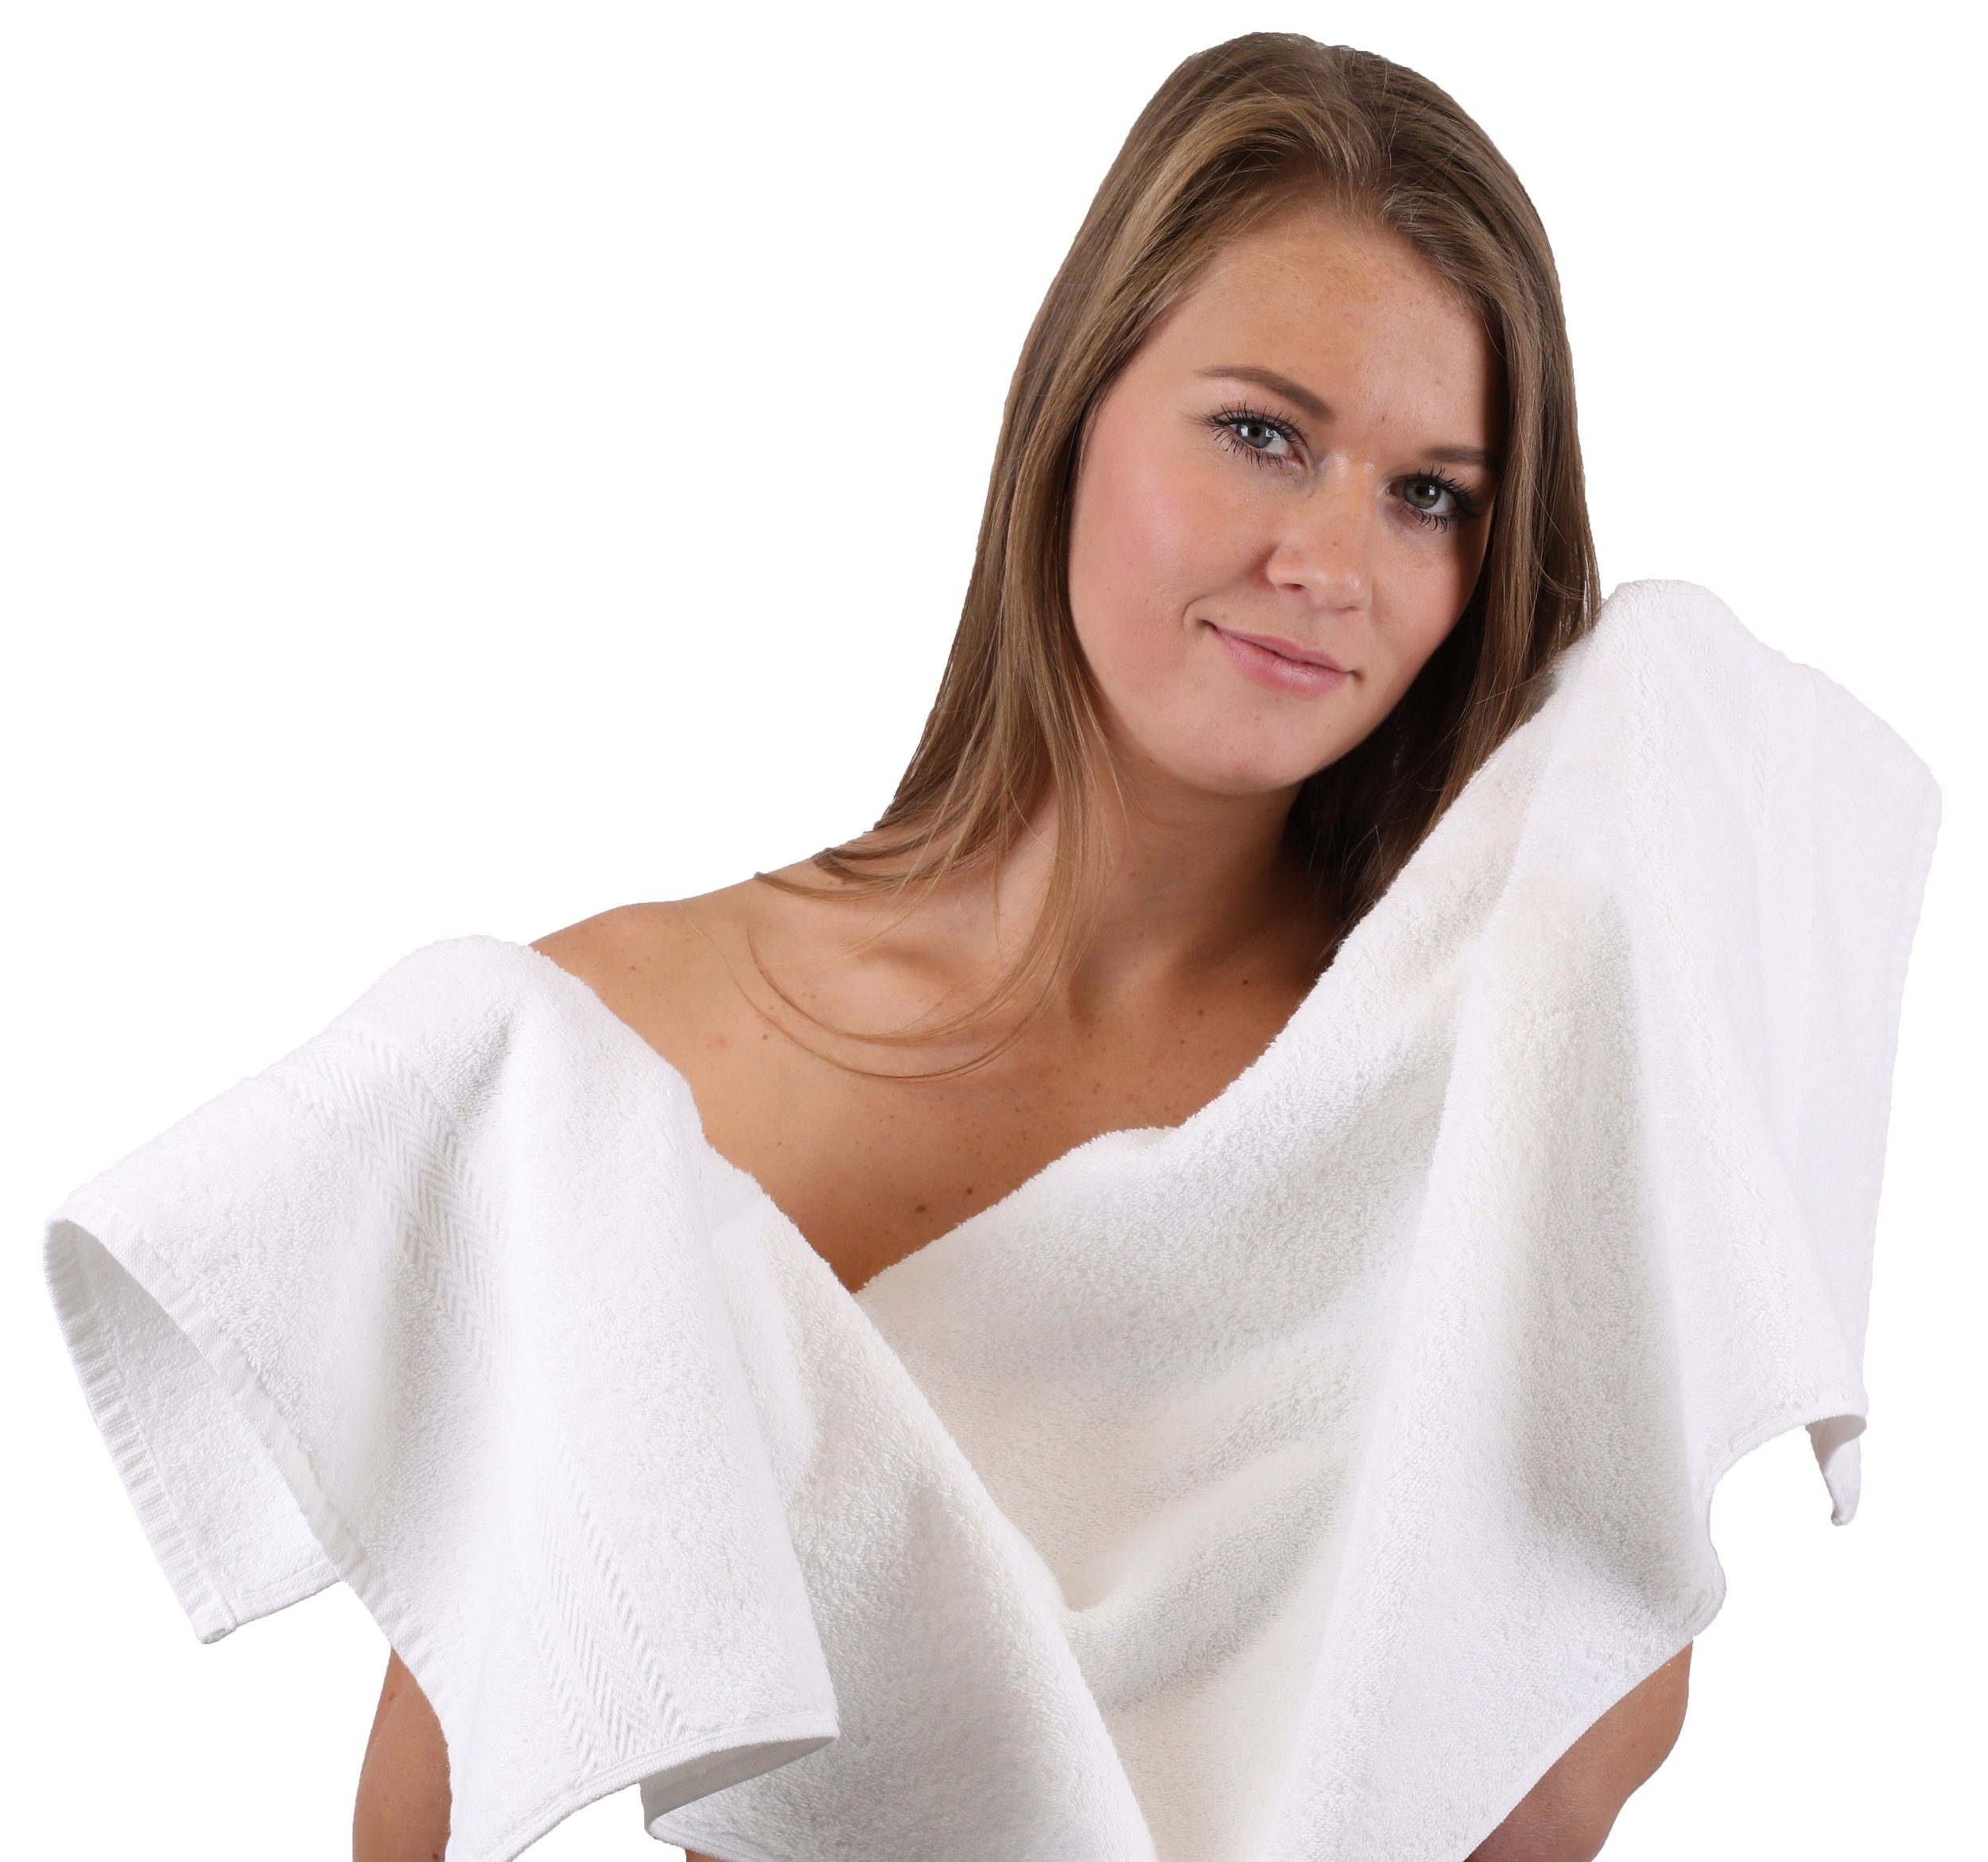 Betz Handtücher Baumwolle Stück 4 weiß 4 Handtücher Premium Handtücher und 100% Farbe beige